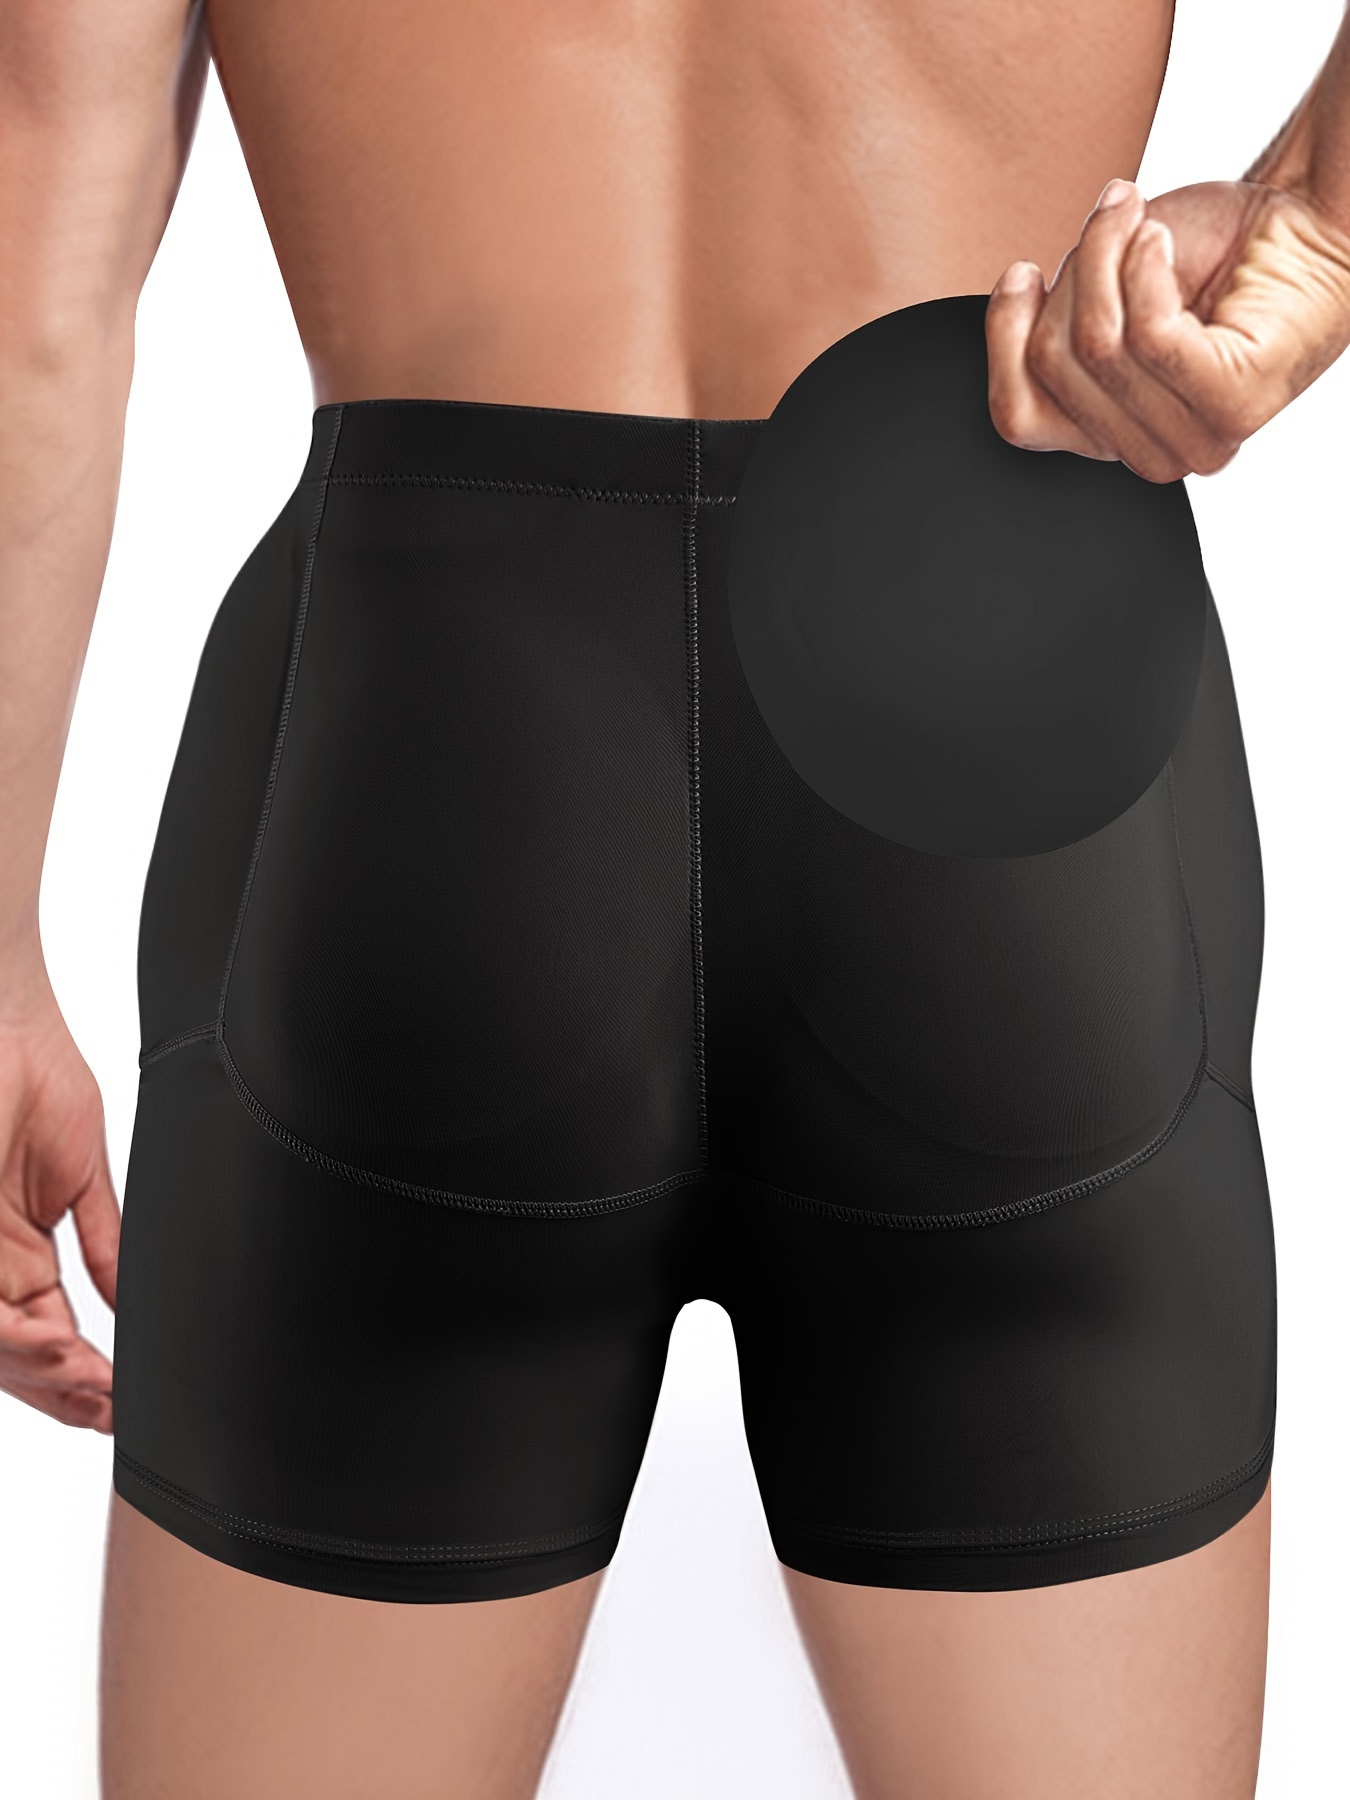 Black Bum Lifter Butt Enhancer Underwear Pants Shorts Shaper BBL